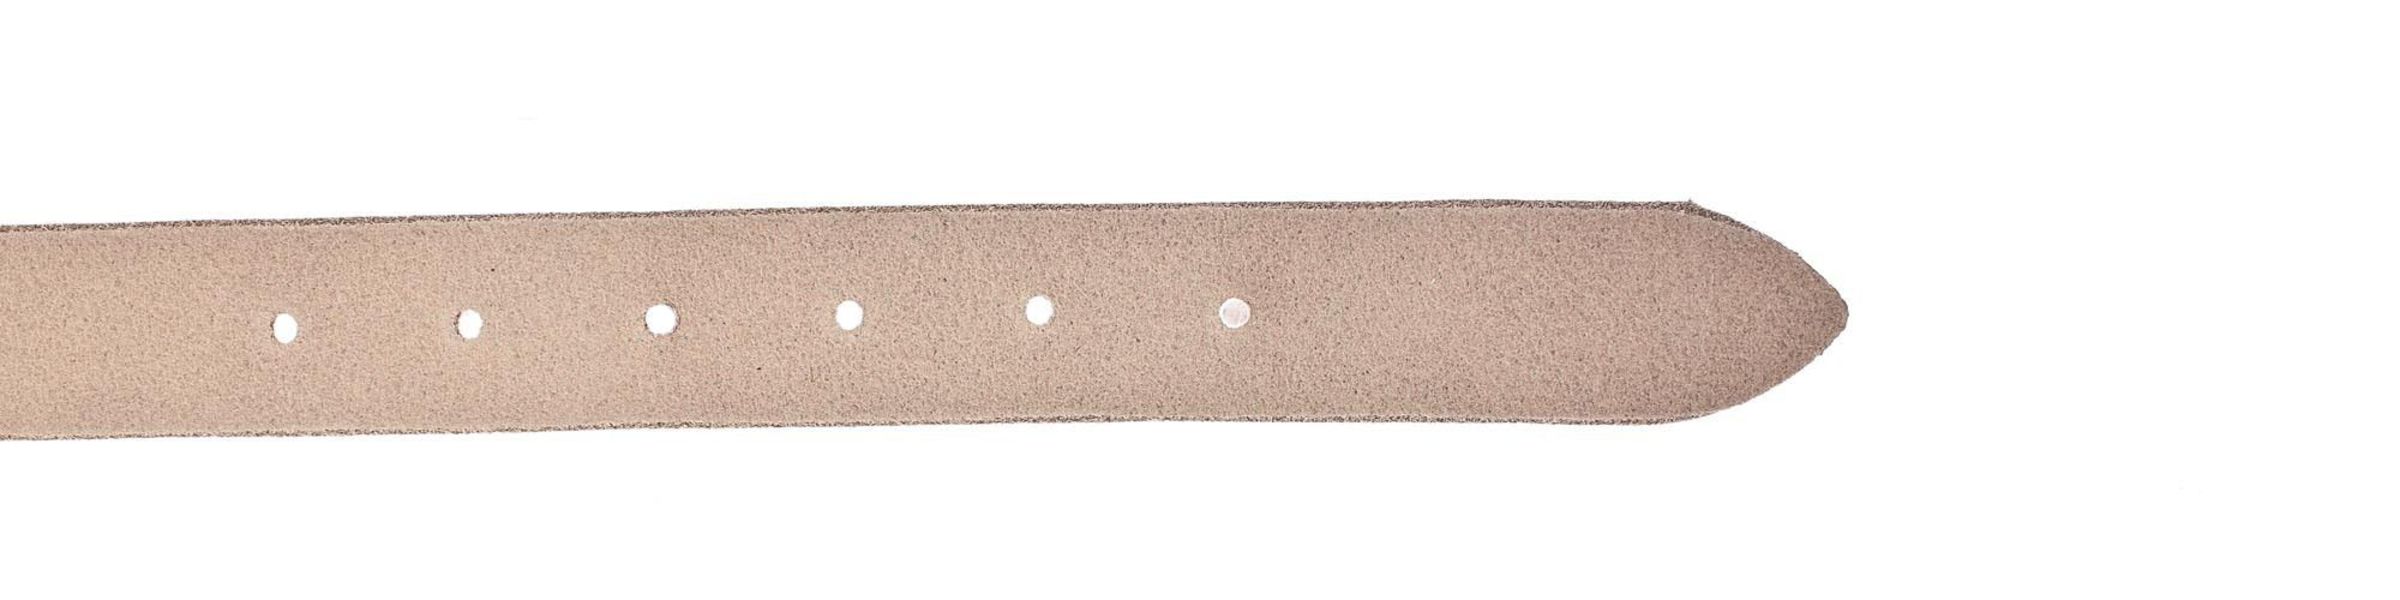 Vanzetti Leather belt - brown (0180)